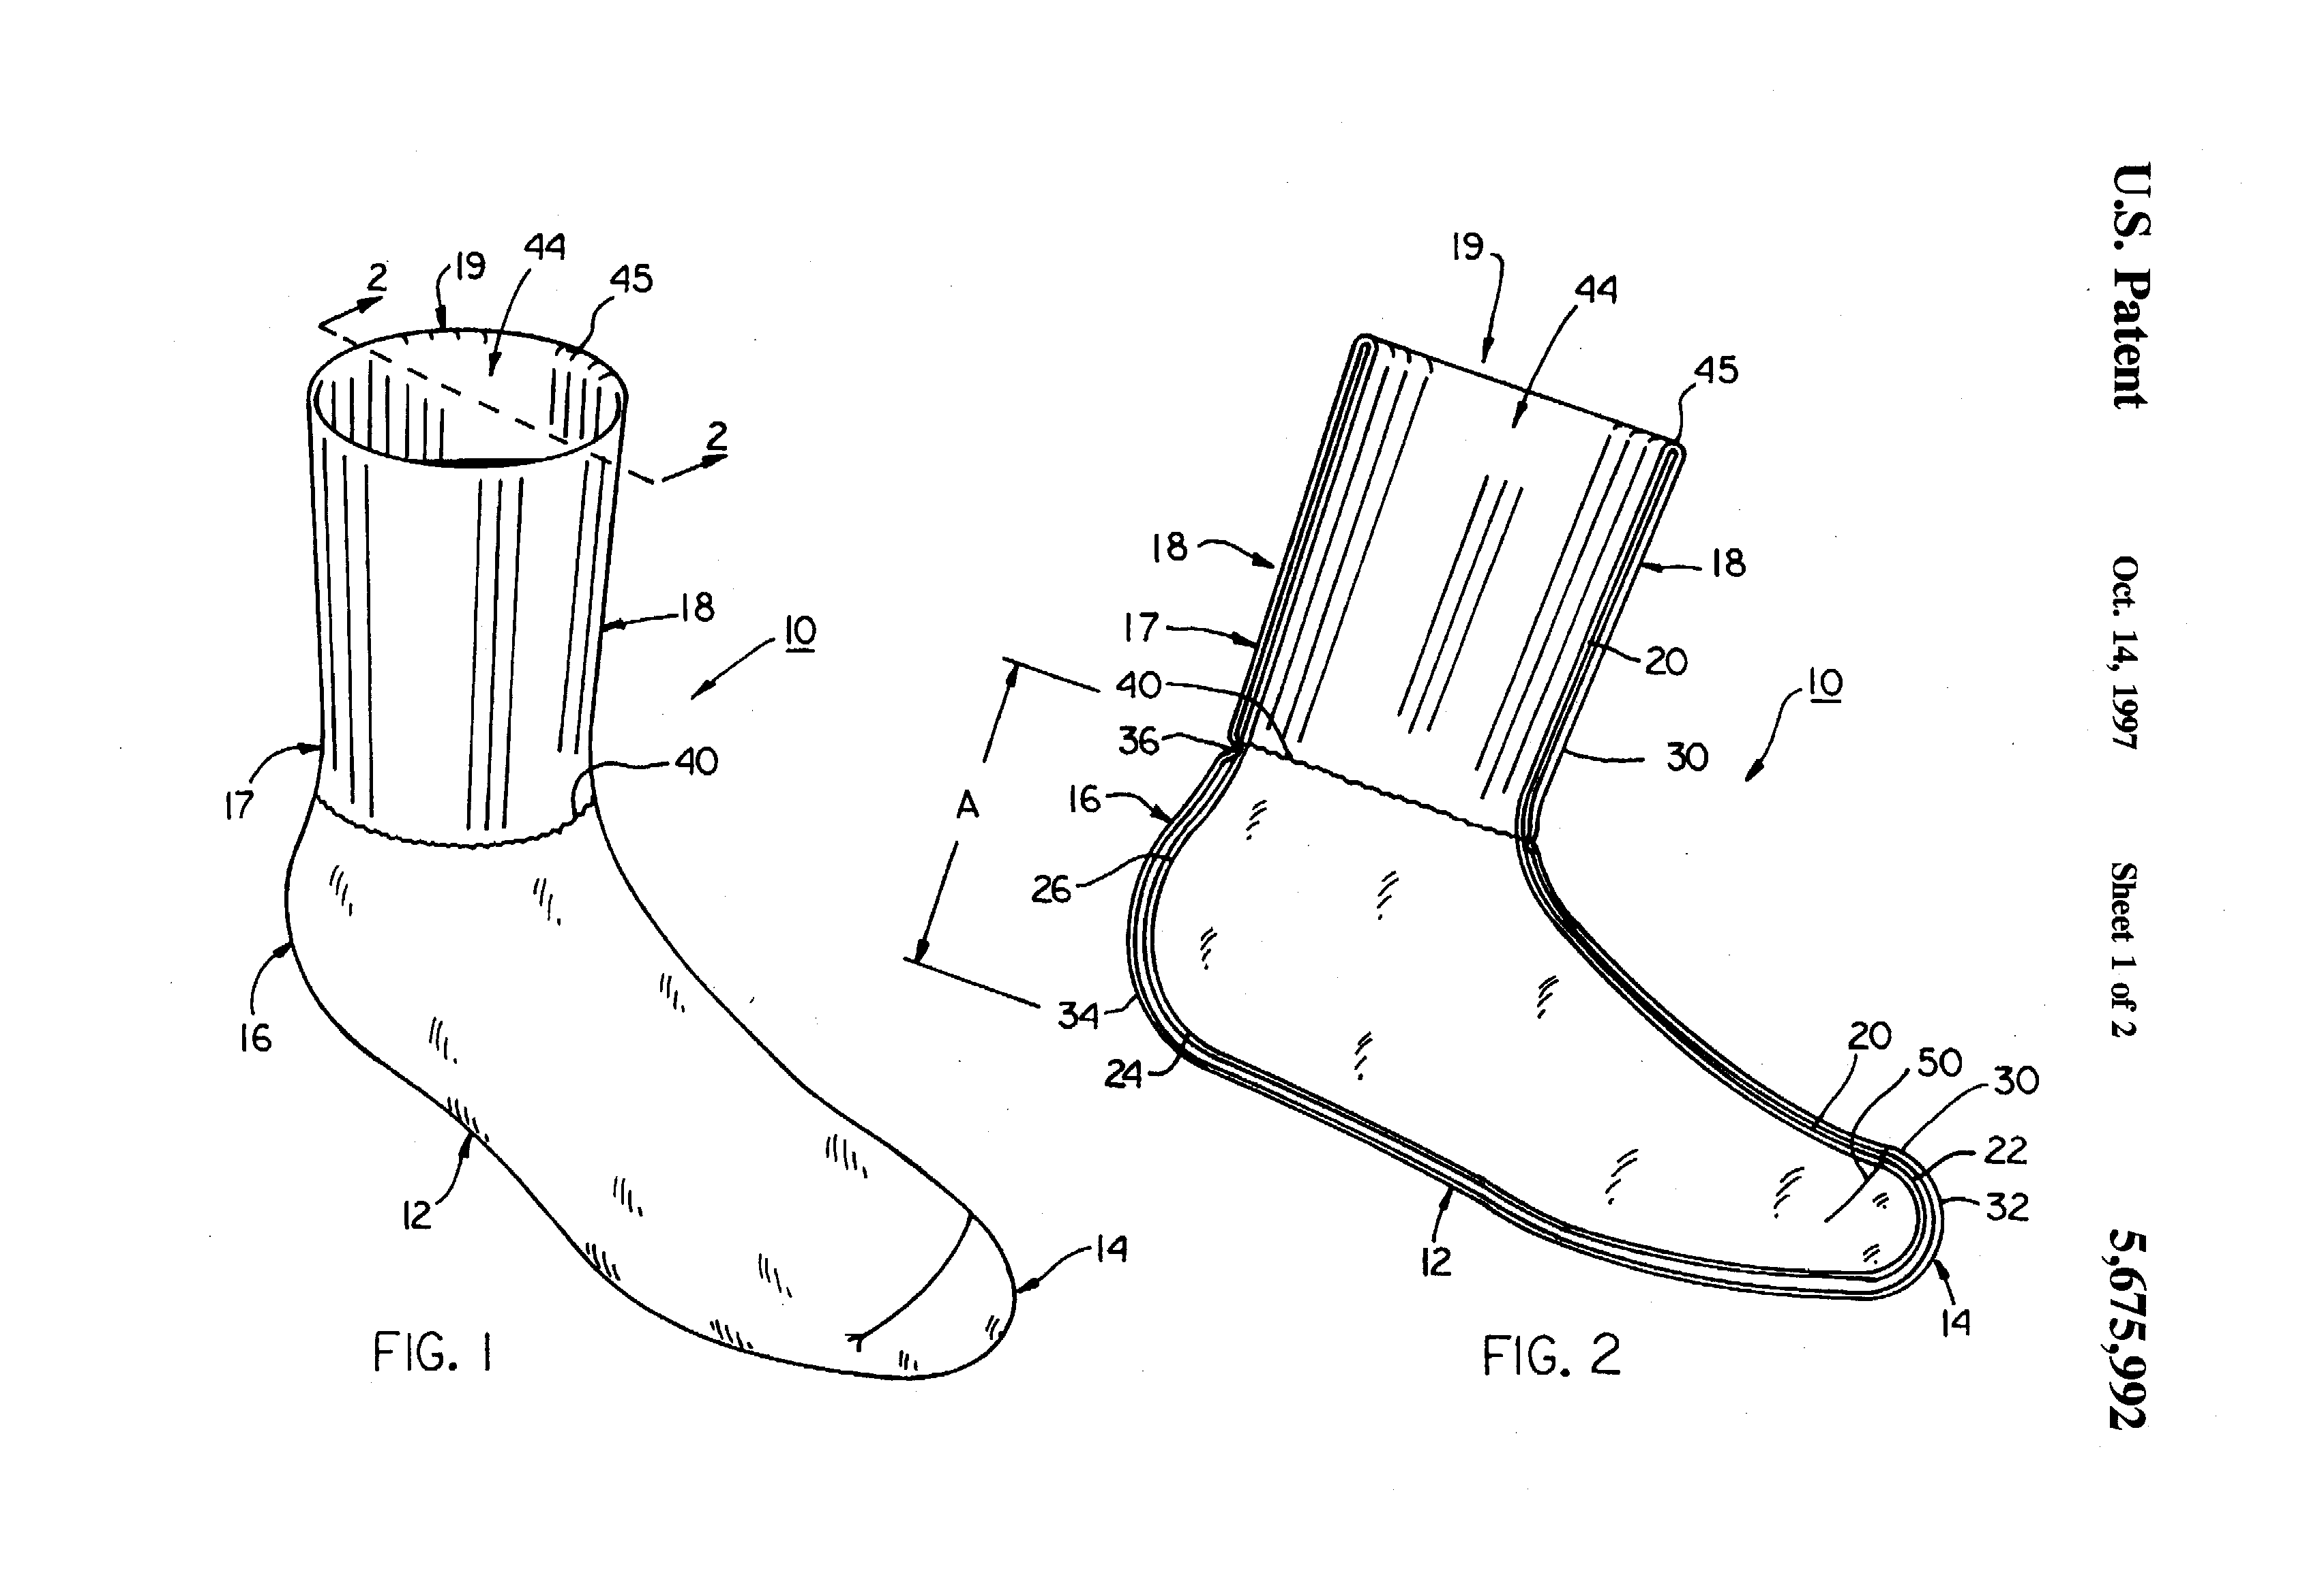 Original-Zeichnung aus der Patentschrift